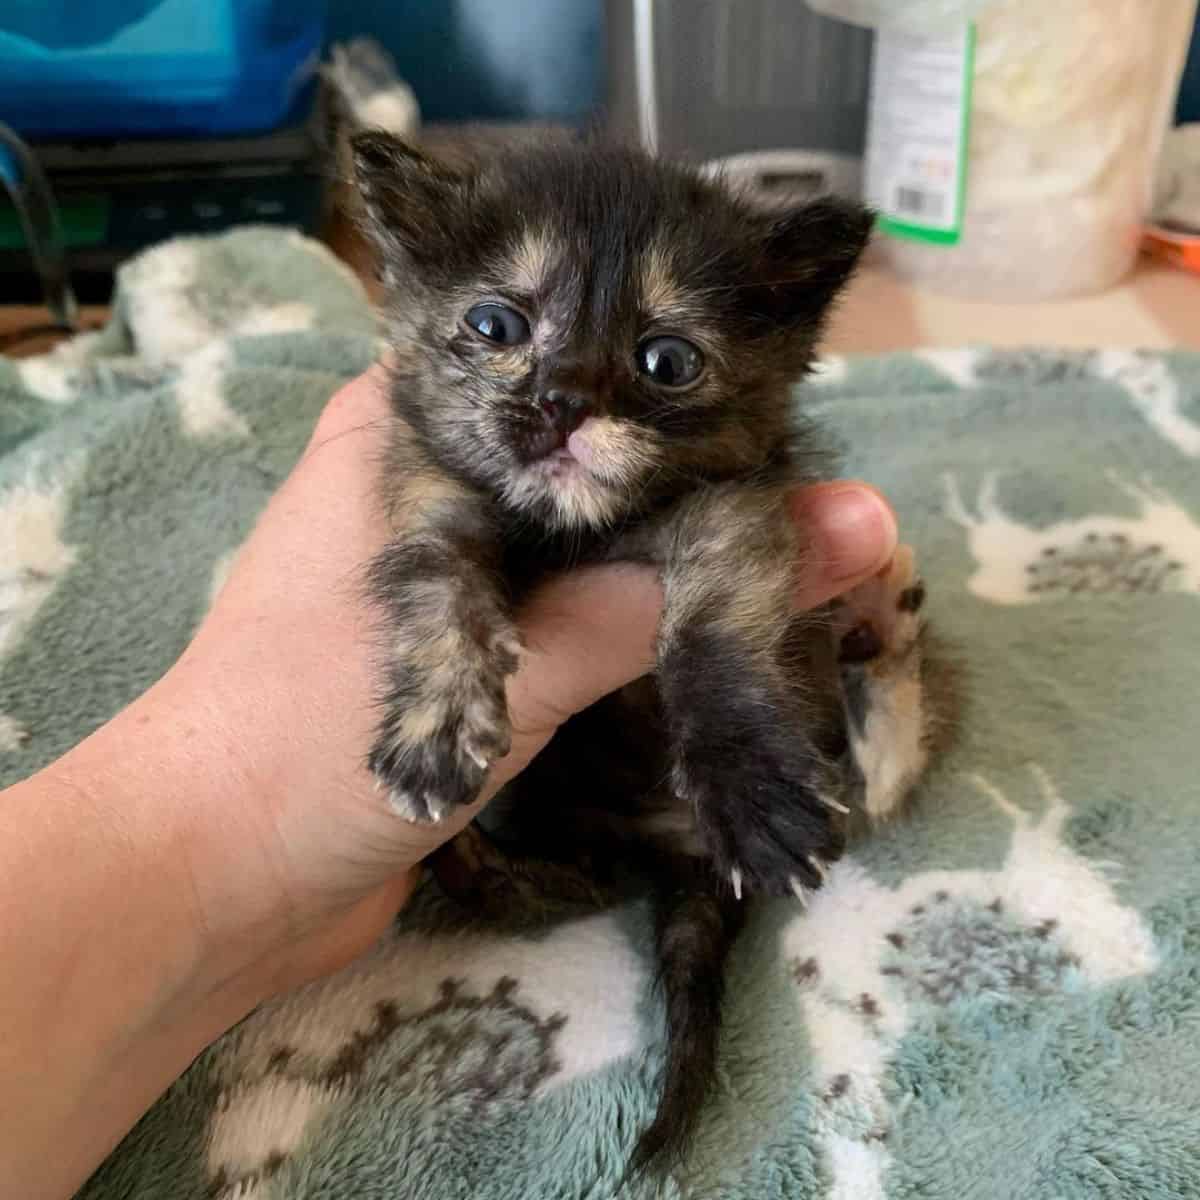 little kitten being held